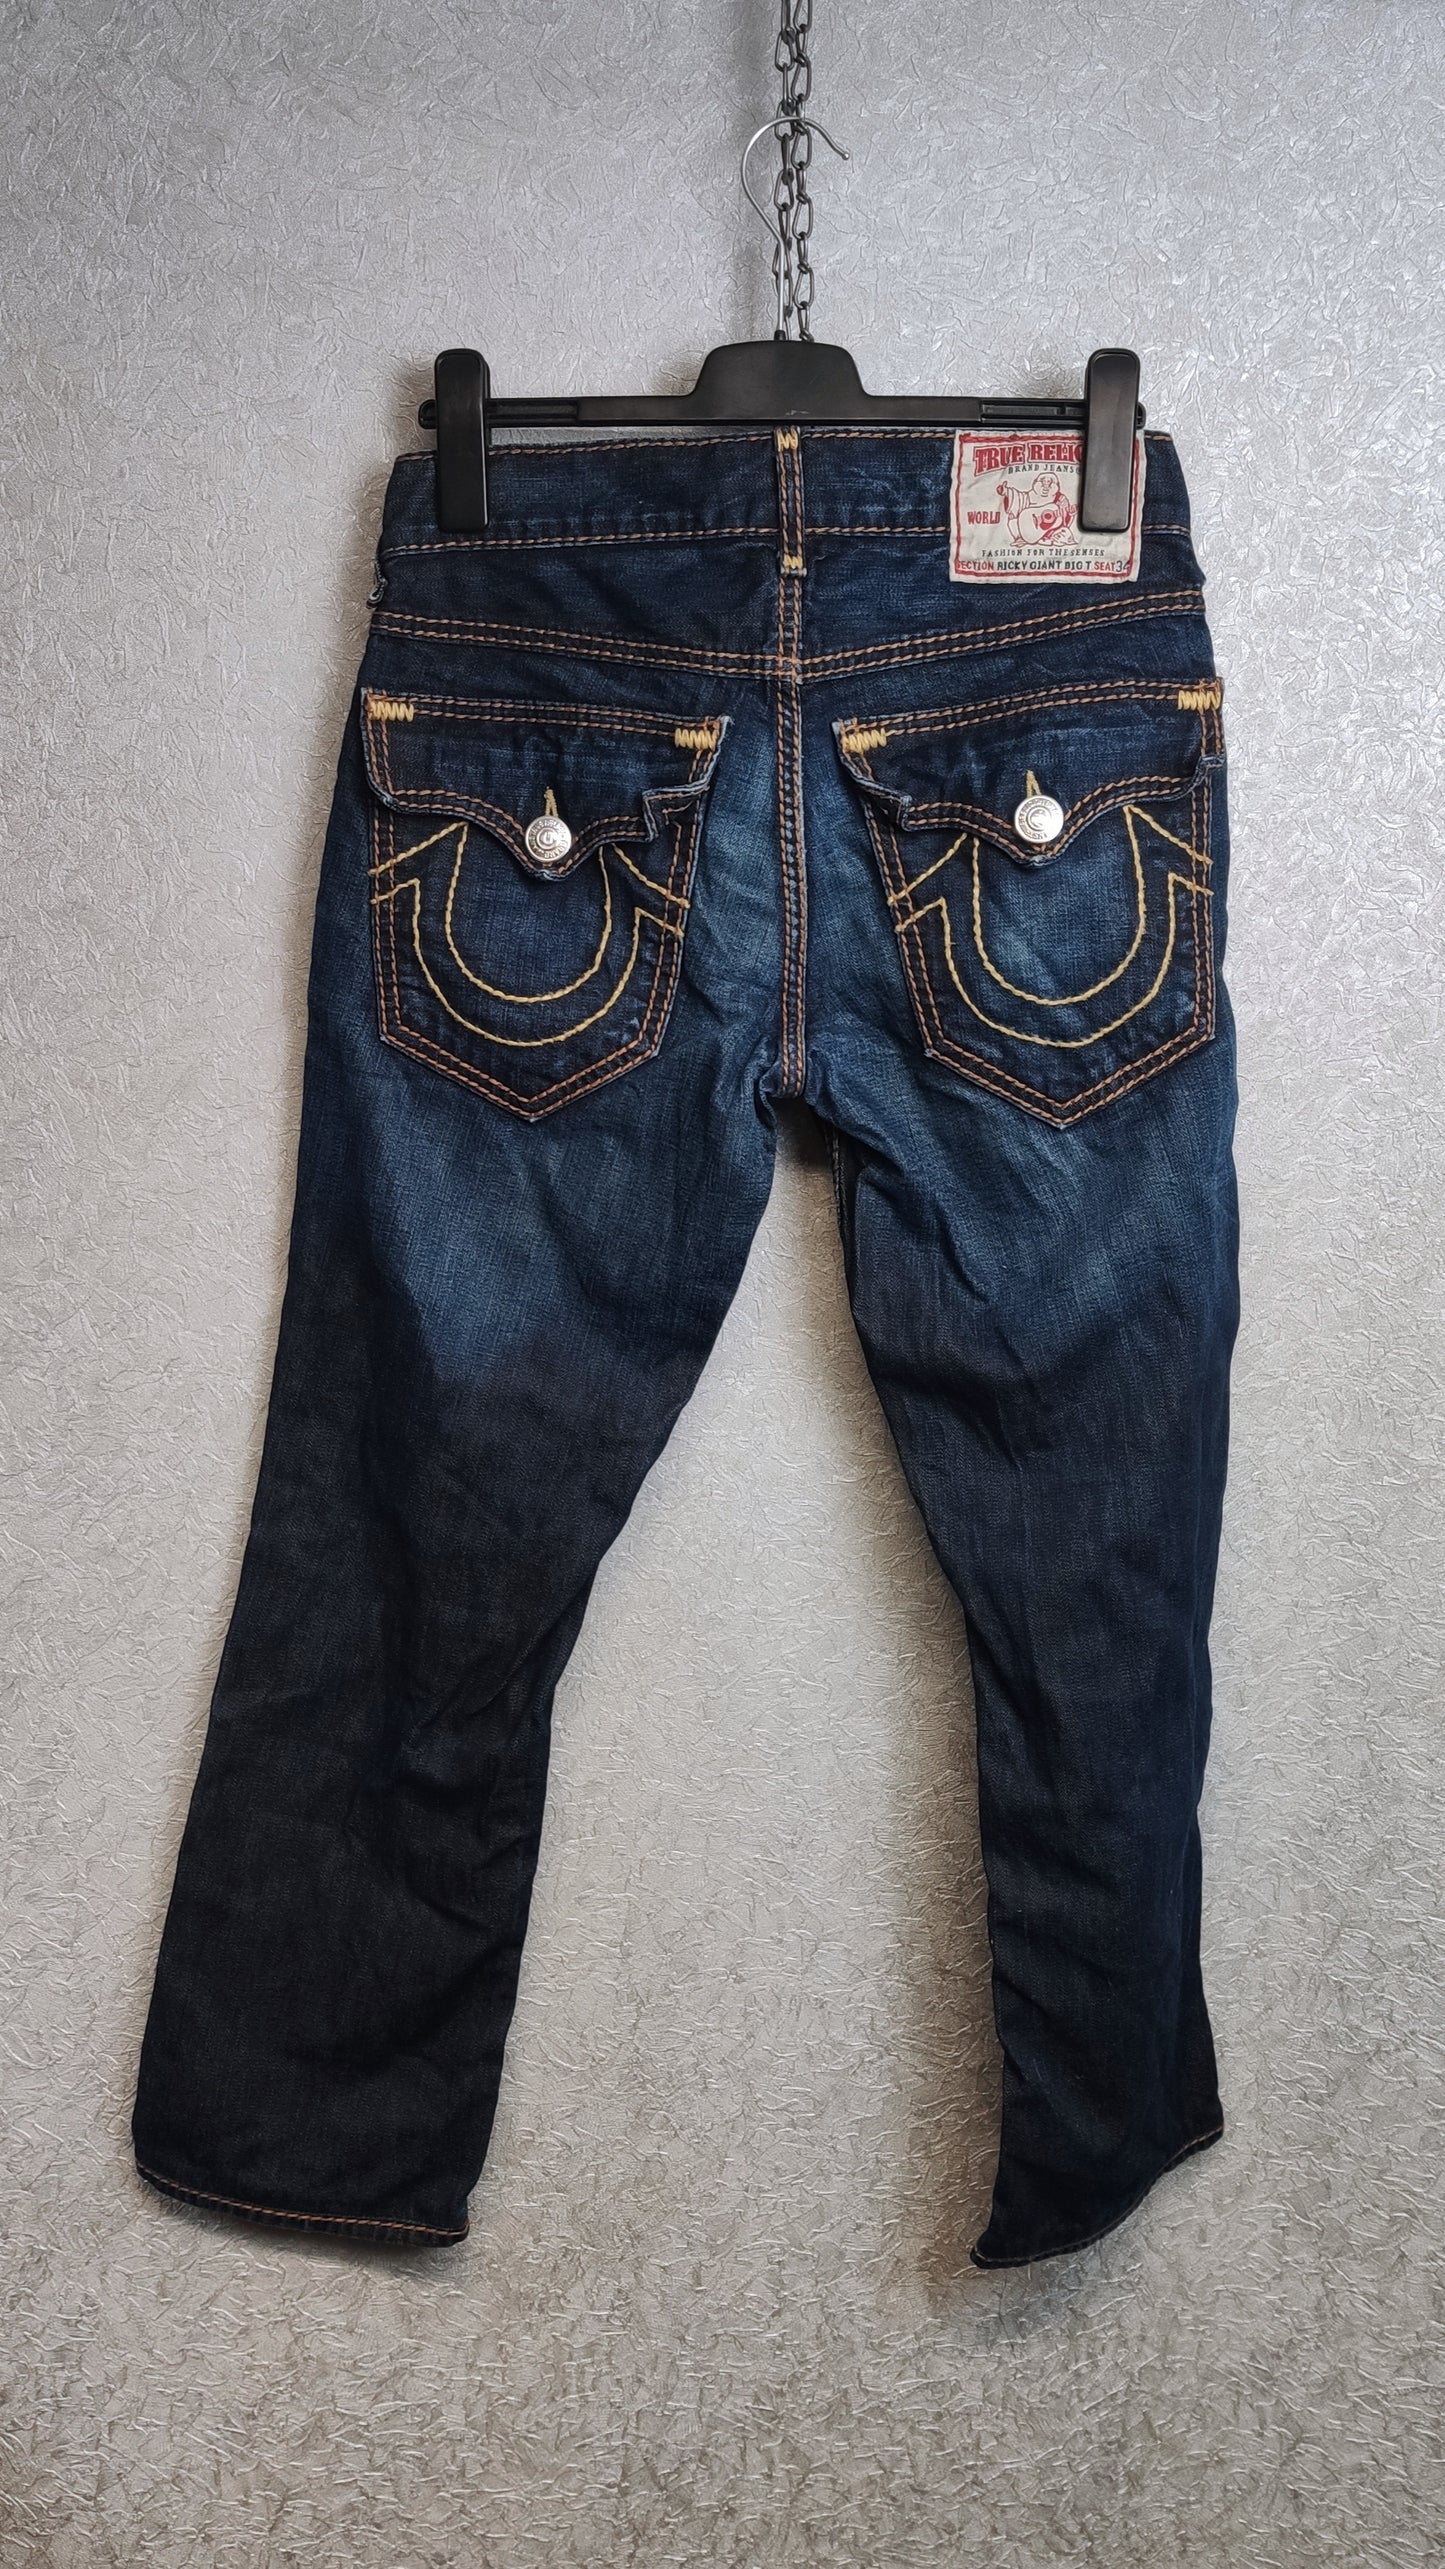 Vintage True Religion Jeans Size 29